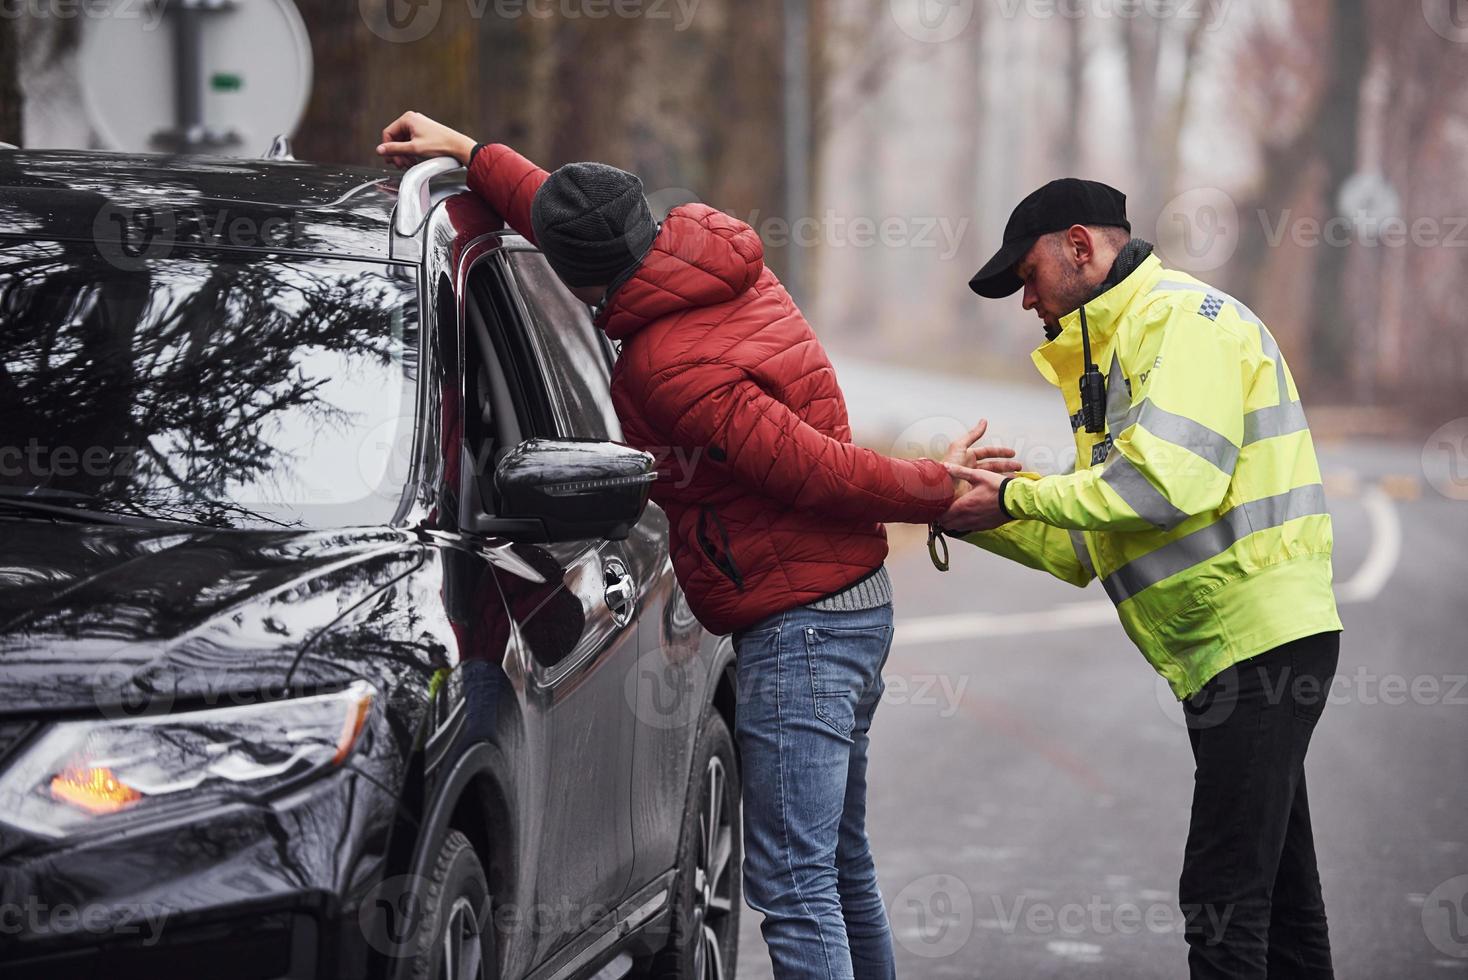 Politie officier in groen uniform gevangen auto- diefstal Aan de weg foto